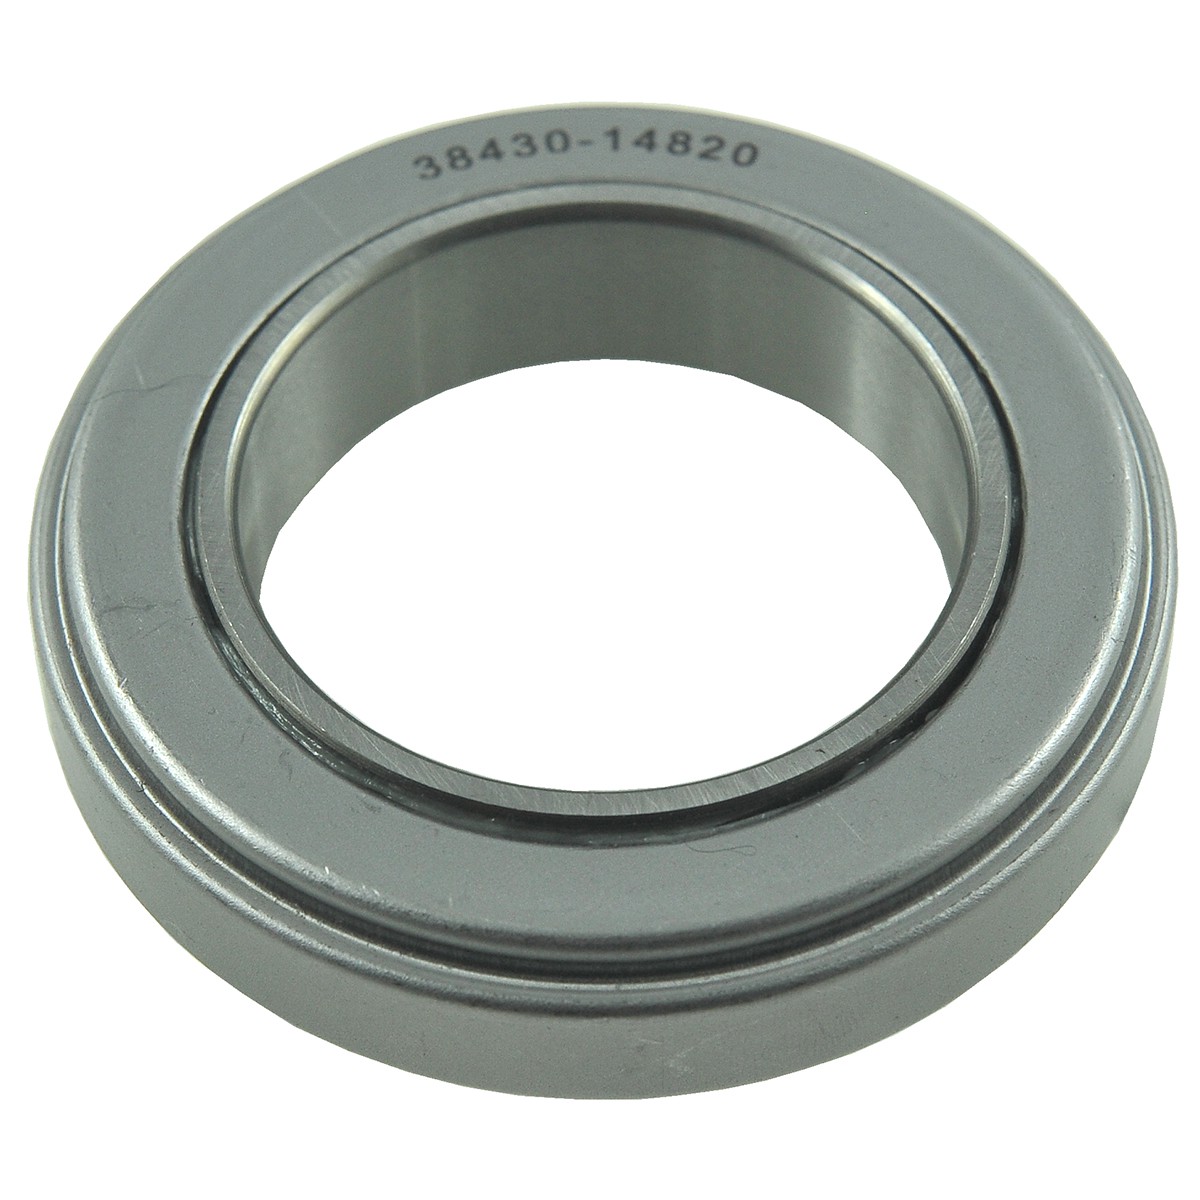 Clutch release bearing / 55 x 87 mm / Kubota L2950/L3000/L3250/L3350/L3400/L3450/L3650/L4350 / 38430-14820